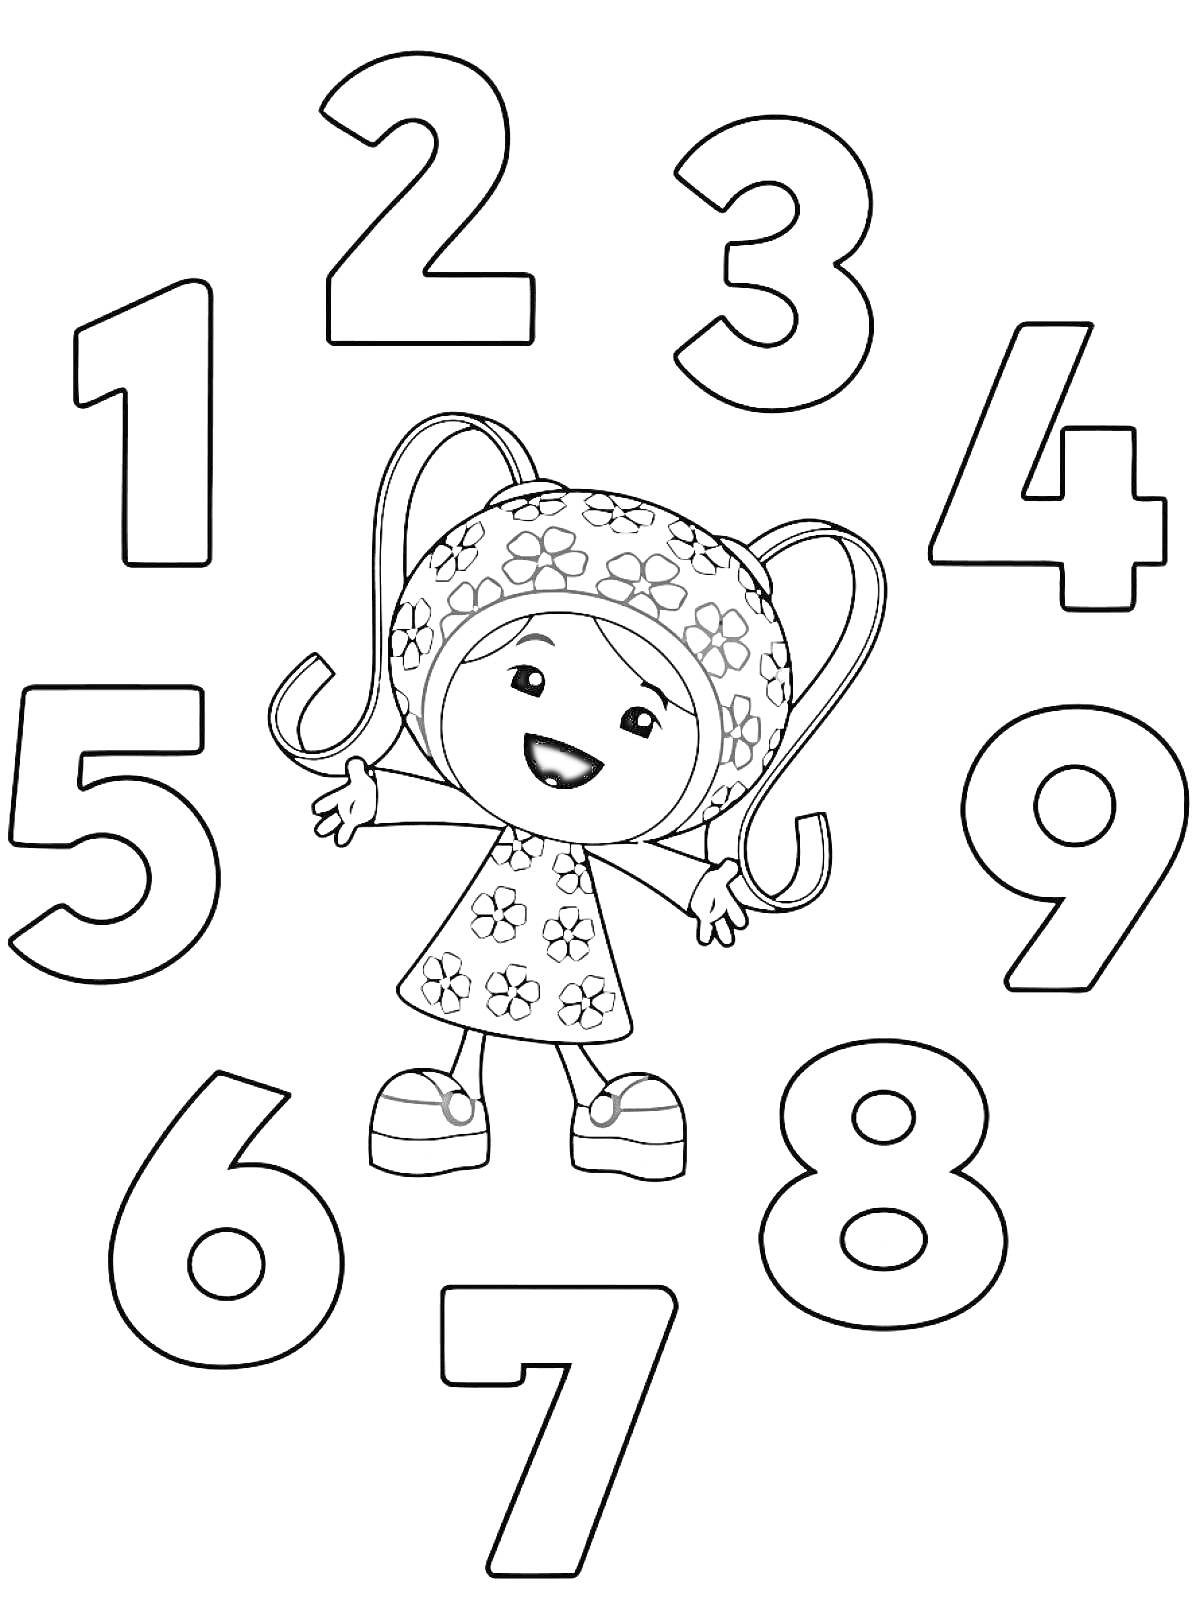 Раскраска Девочка-робот в цветочном платье и числам от 1 до 9 вокруг неё